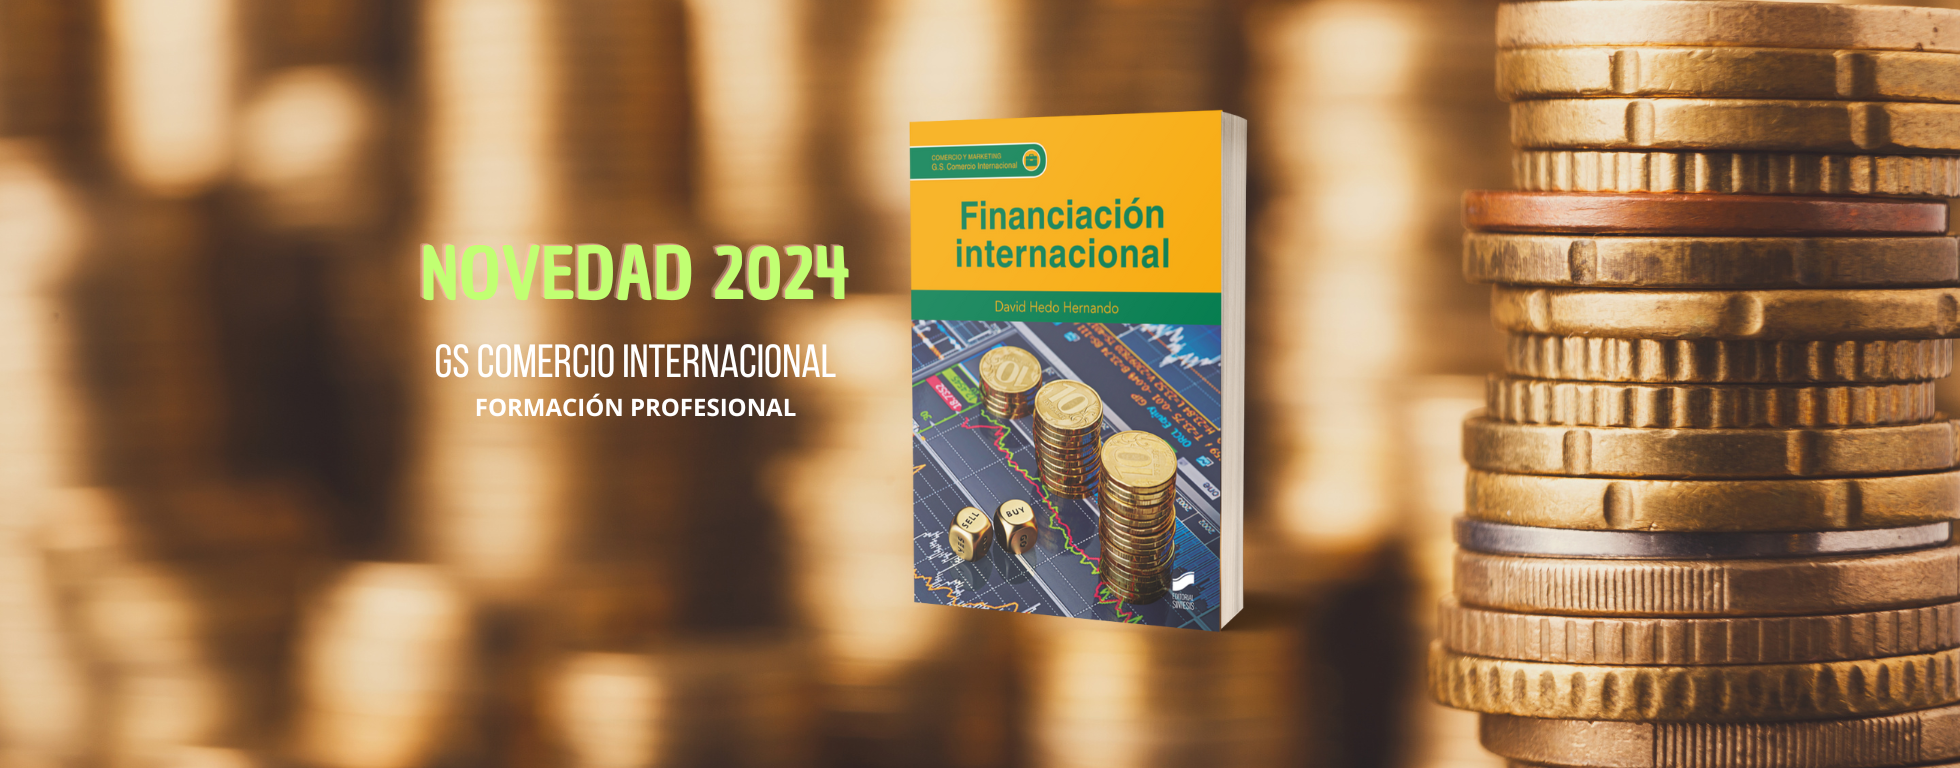 Novedad 2024 Financiación internacional